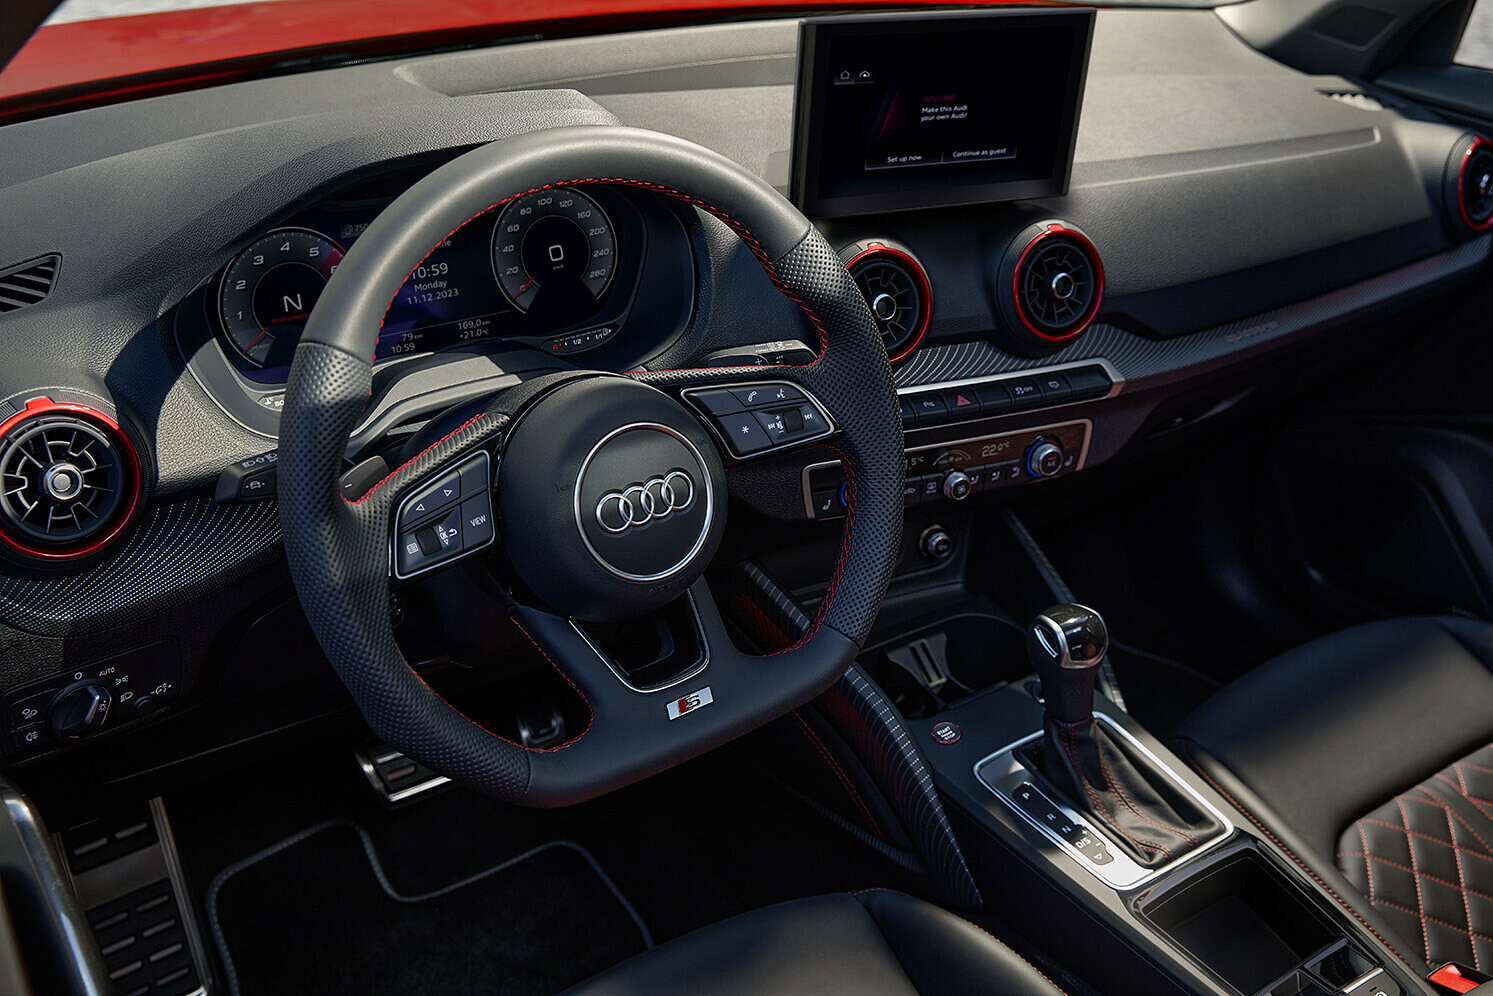 Infotainment-Upgrade: Die Audi Q2 Modelle erhalten erstmals ein 8,8 Zoll großes touch display. Das Audi virtual cockpit gehört ab sofort zum Serienumfang.